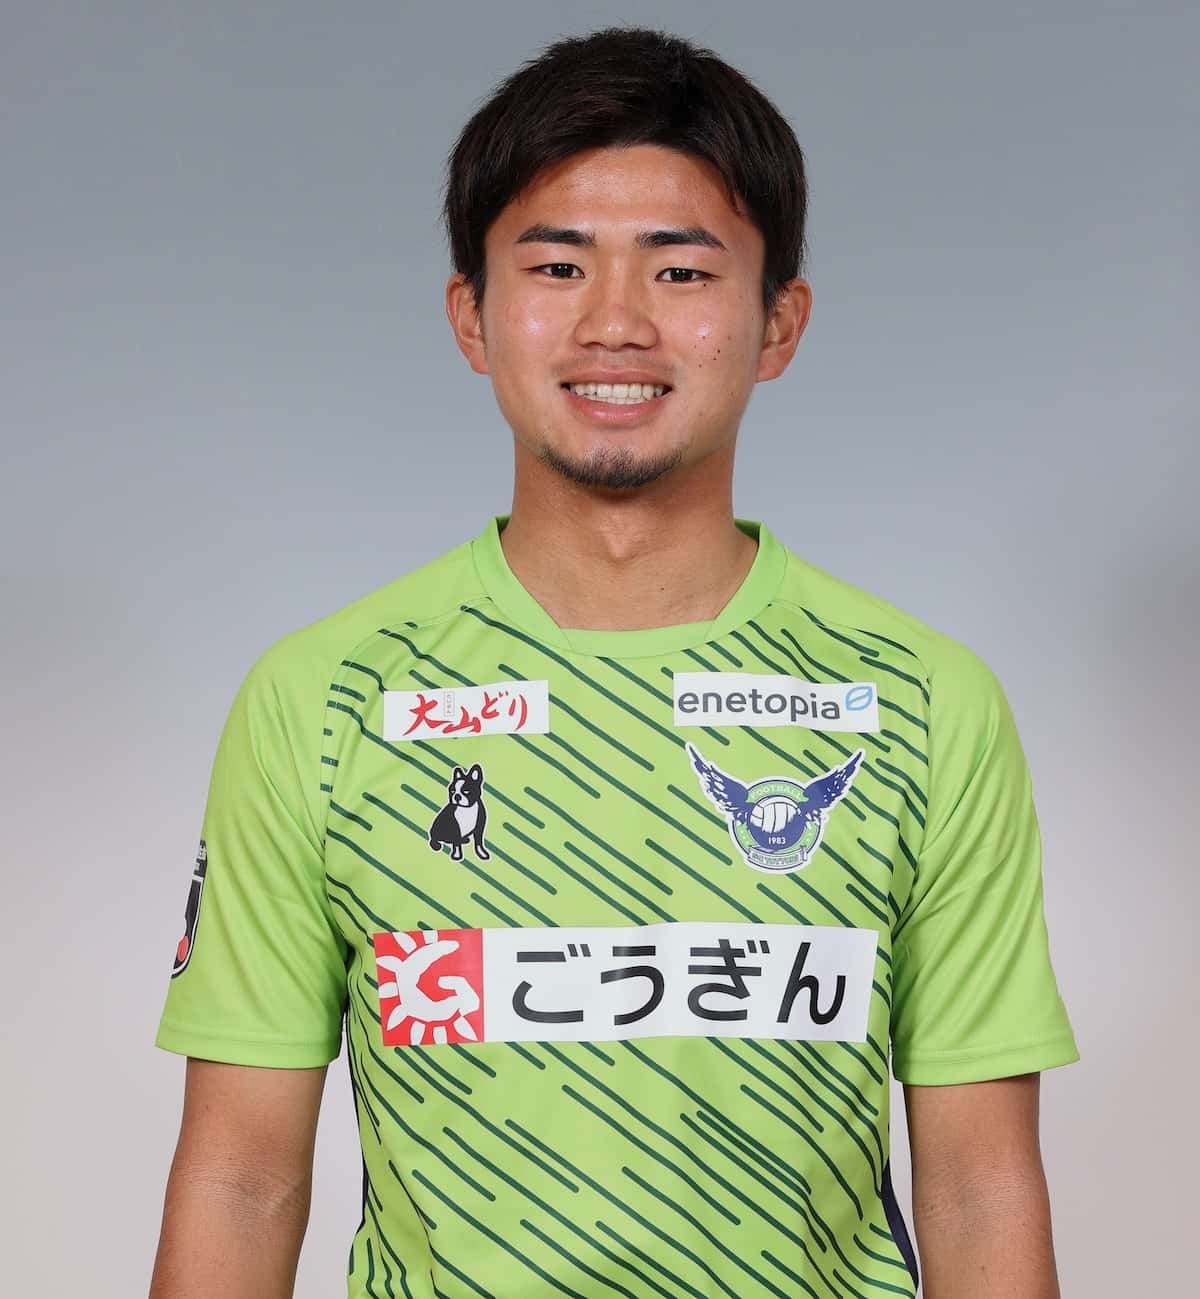 鳥取県のプロサッカークラブ「ガイナーレ鳥取」の世瀬哲人選手